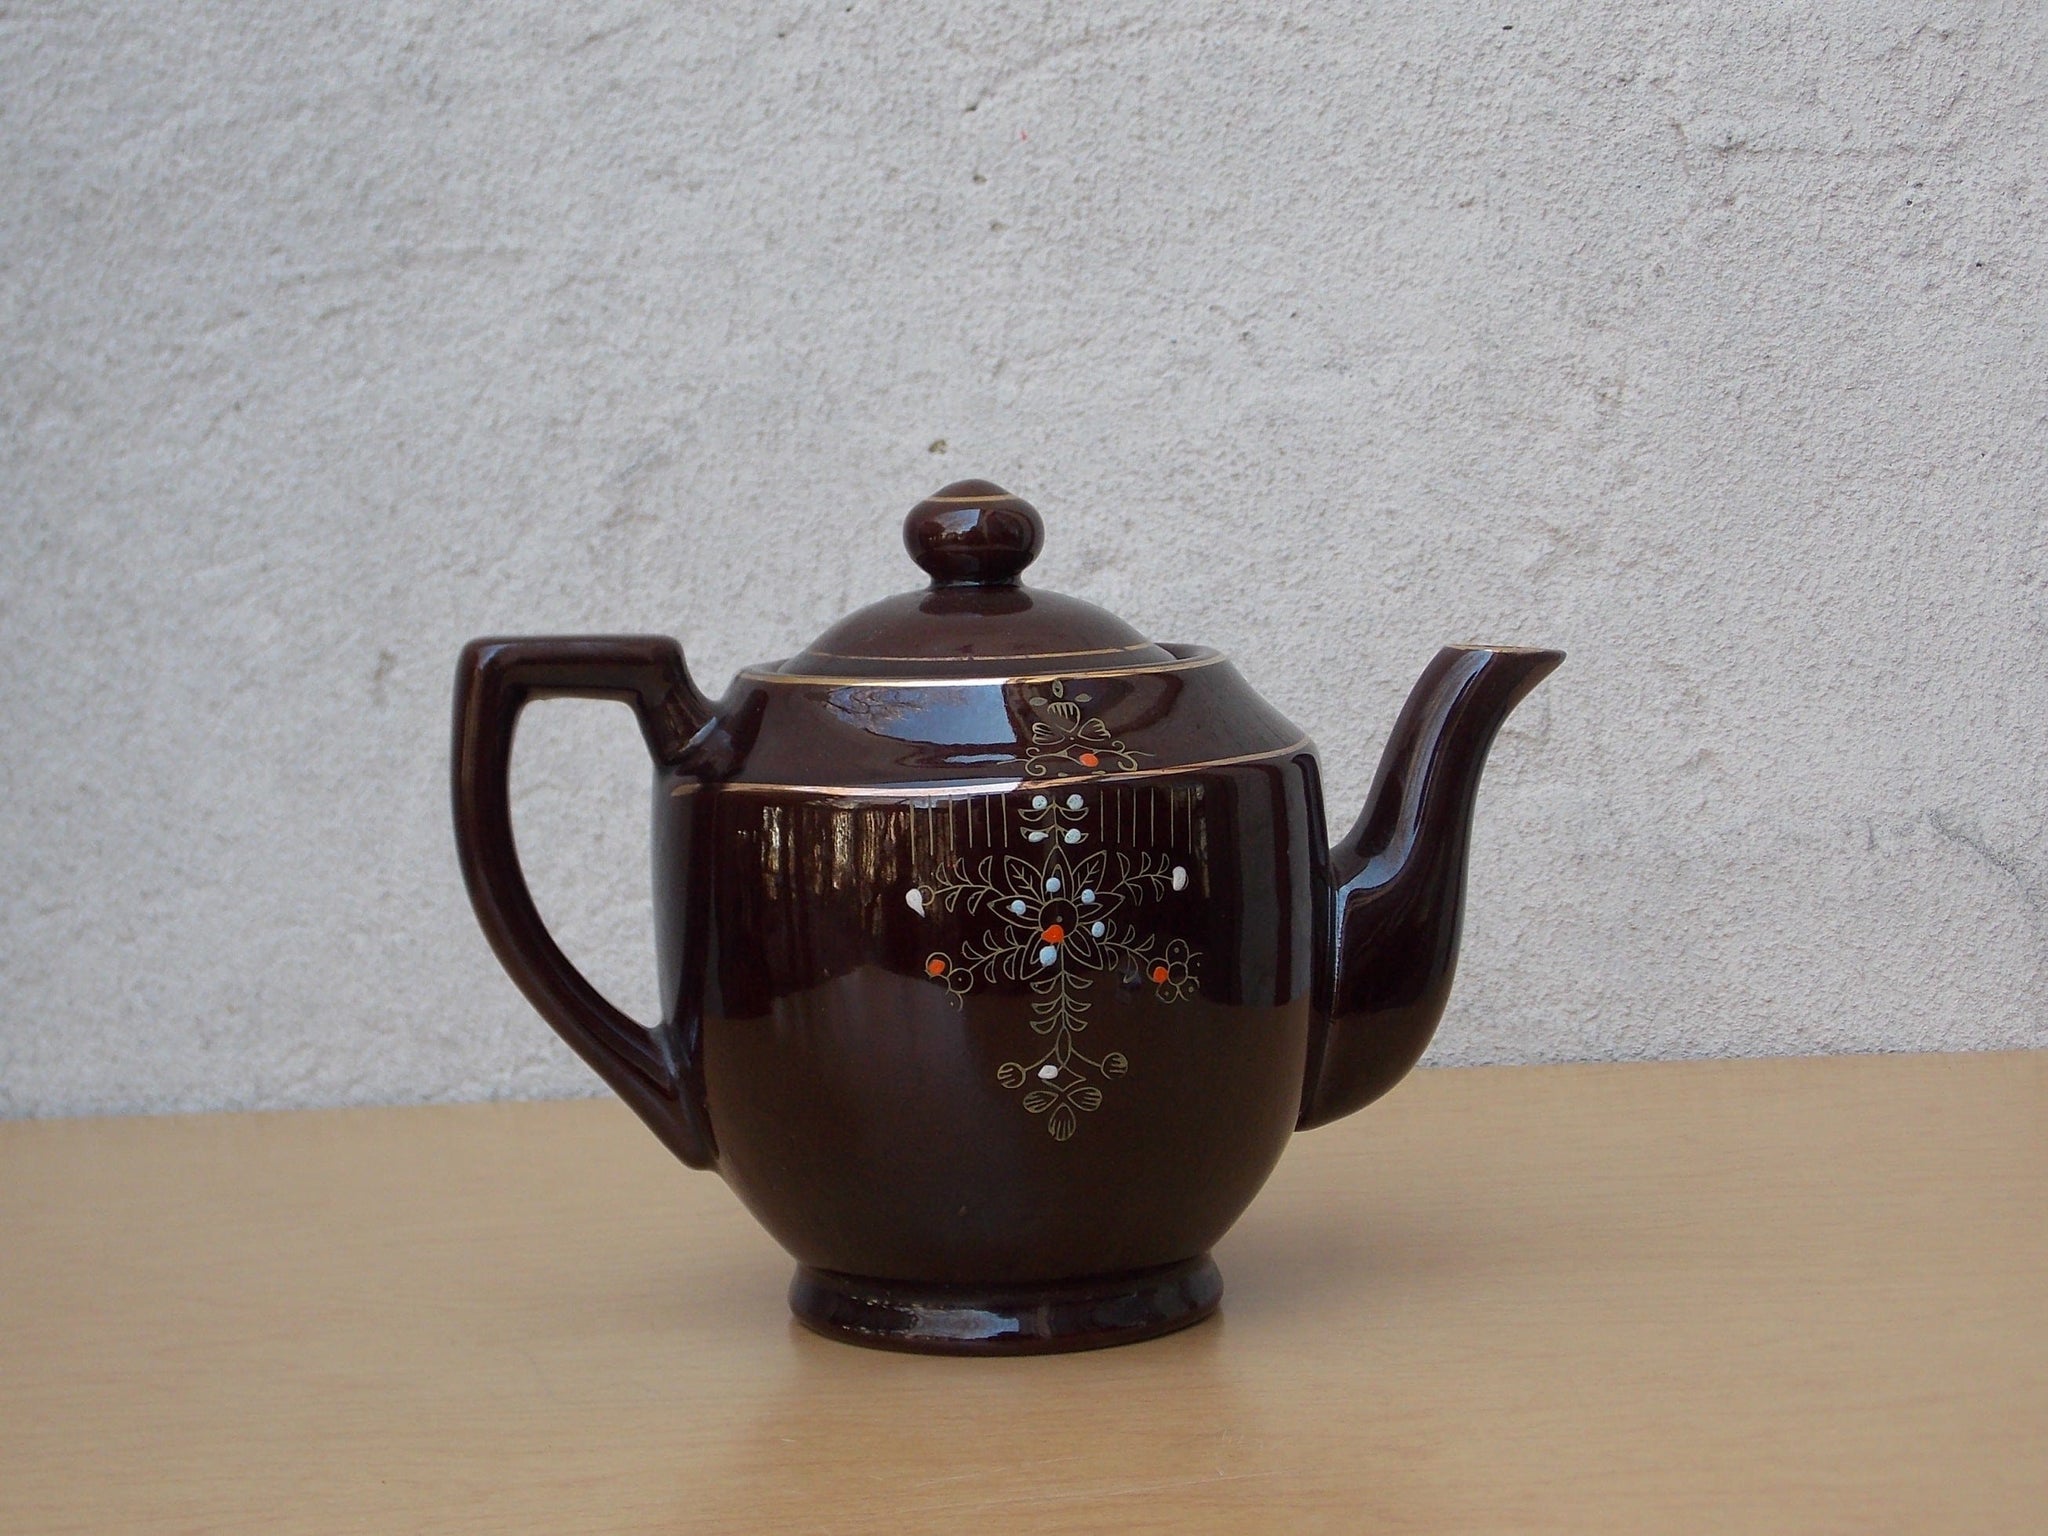 Modern Teapots, Mid-Century teapots - modern teapots, mid-century